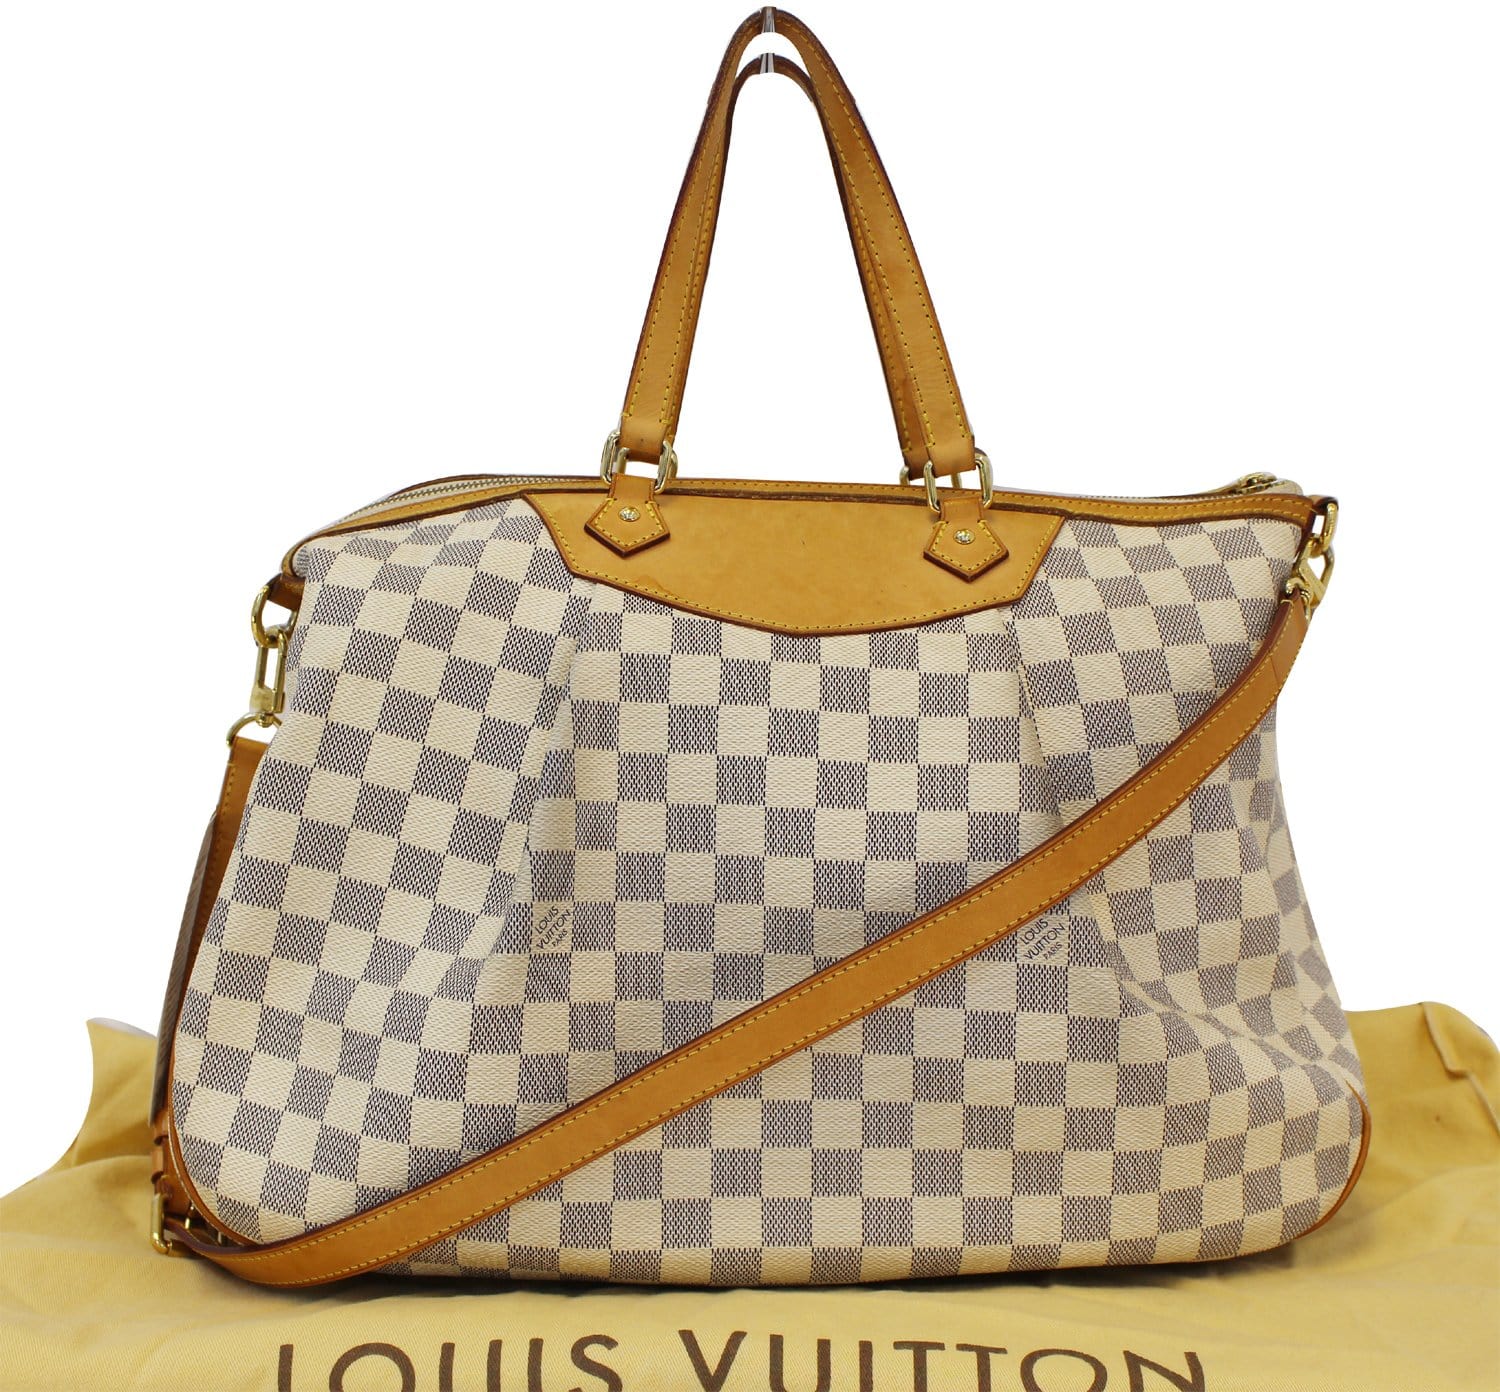 Louis Vuitton - Siracusa - Bag - Catawiki